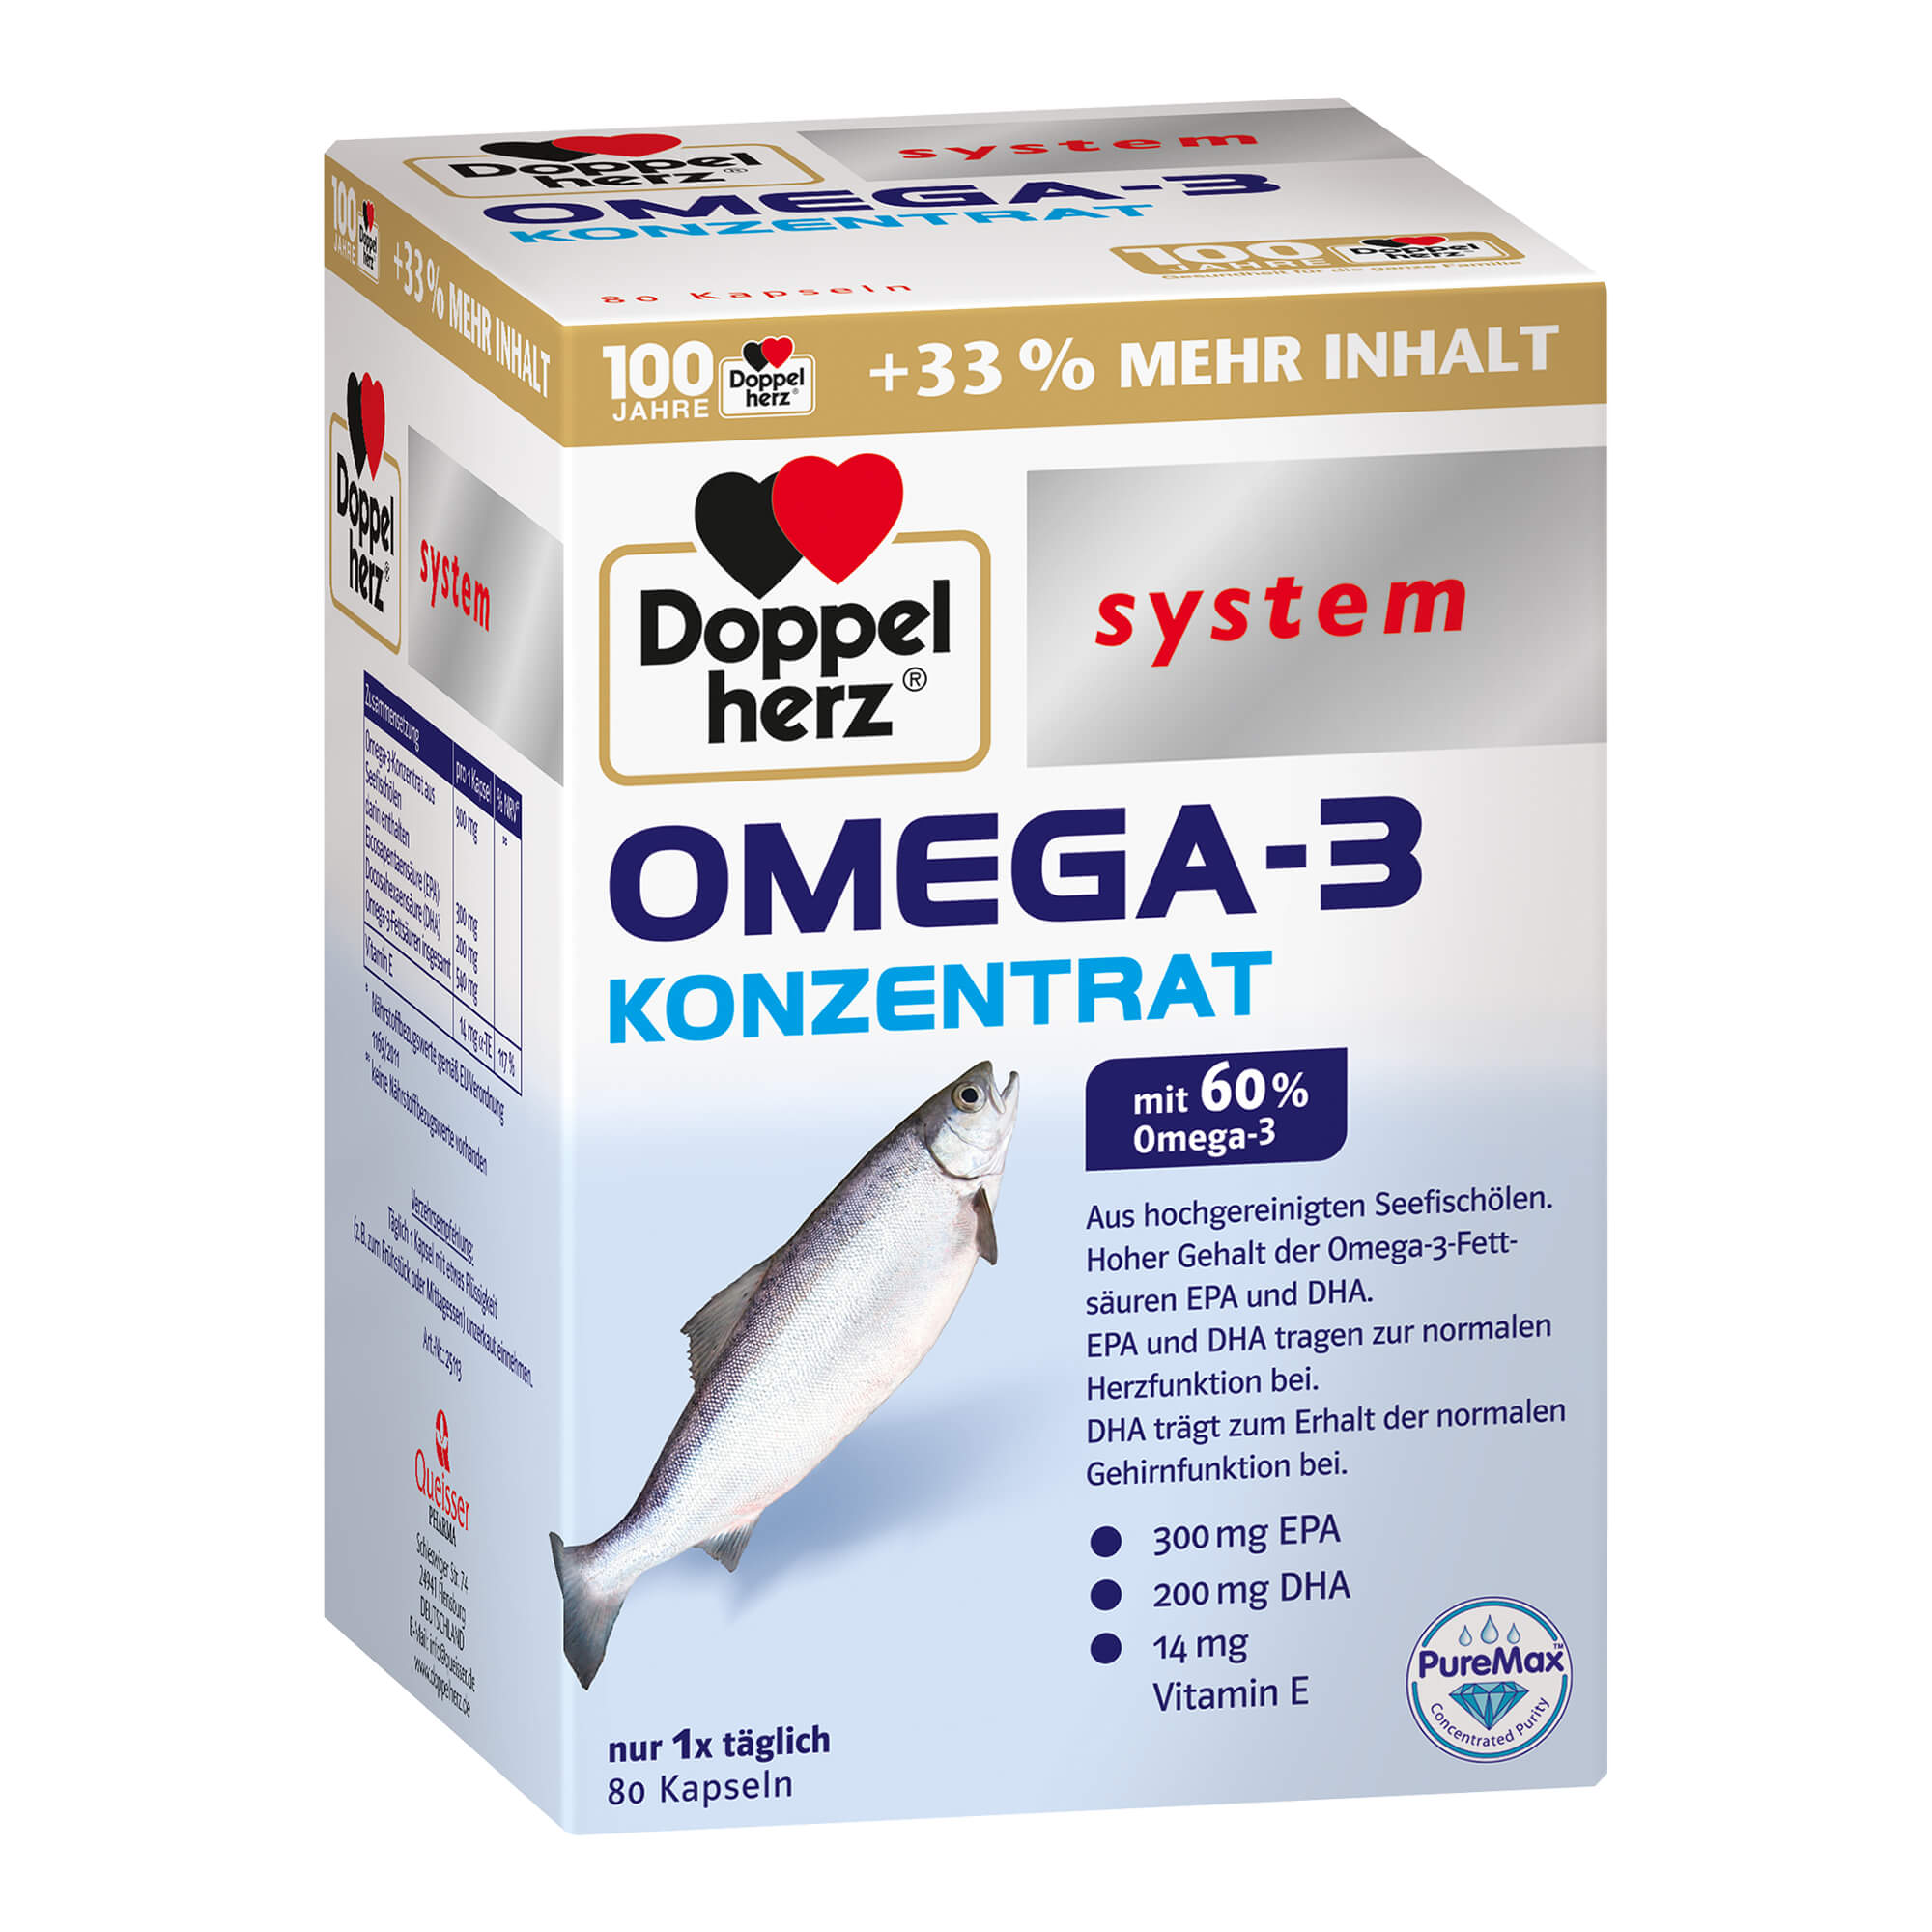 Kapseln mit Omega-3 Konzentrat aus Seefischölen und Vitamin E.